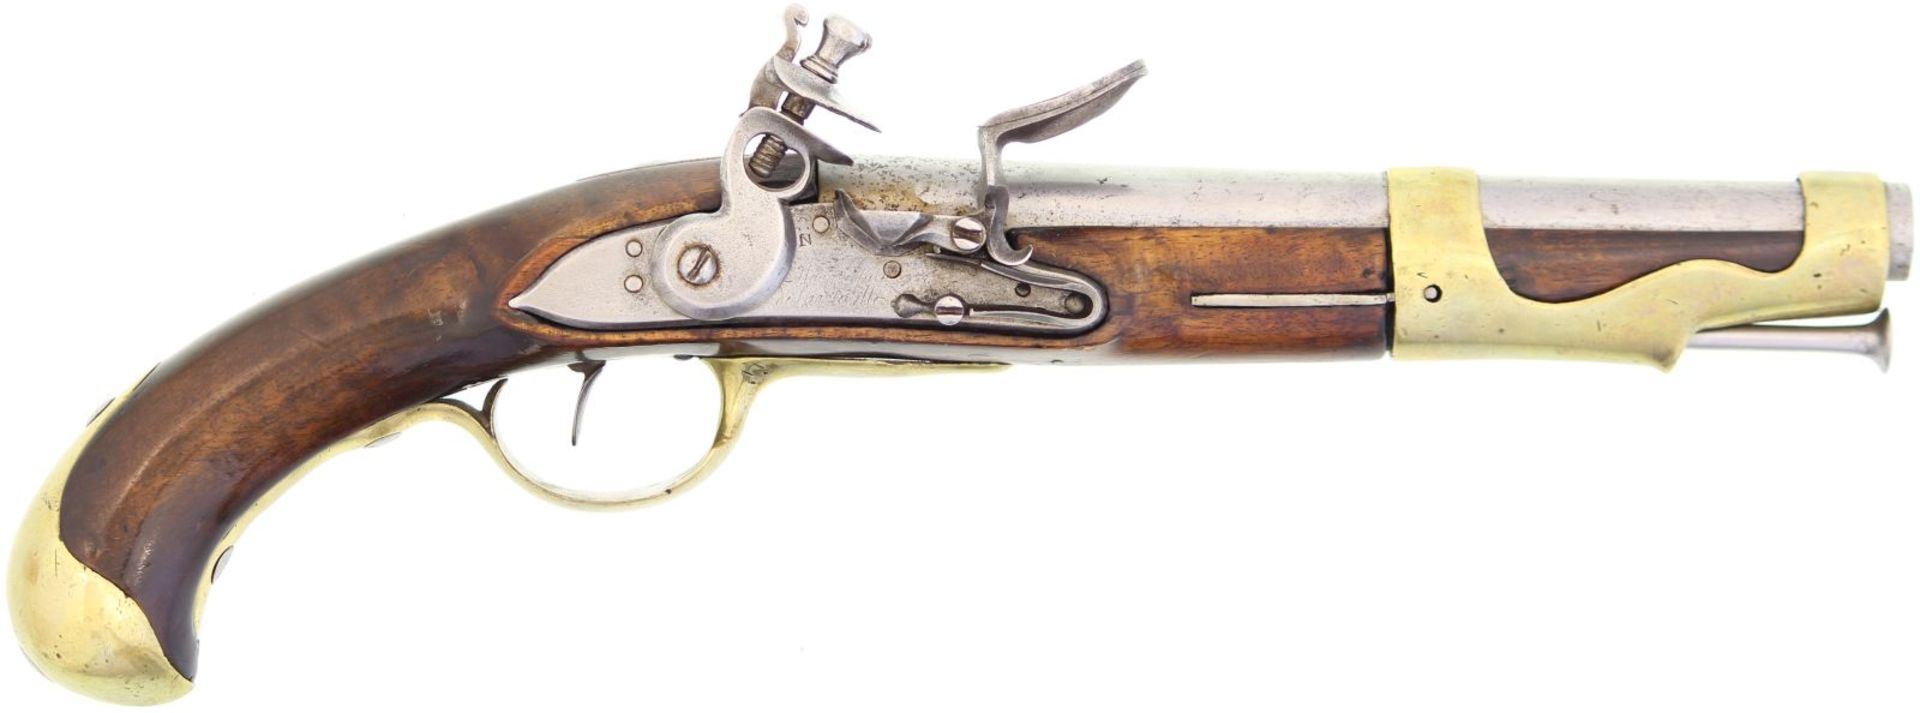 Steinschlosspistole, franz. Mod. 1763, Kal. 17.6mm. Rundlauf, 230mm, Länge 400mm, verwischte